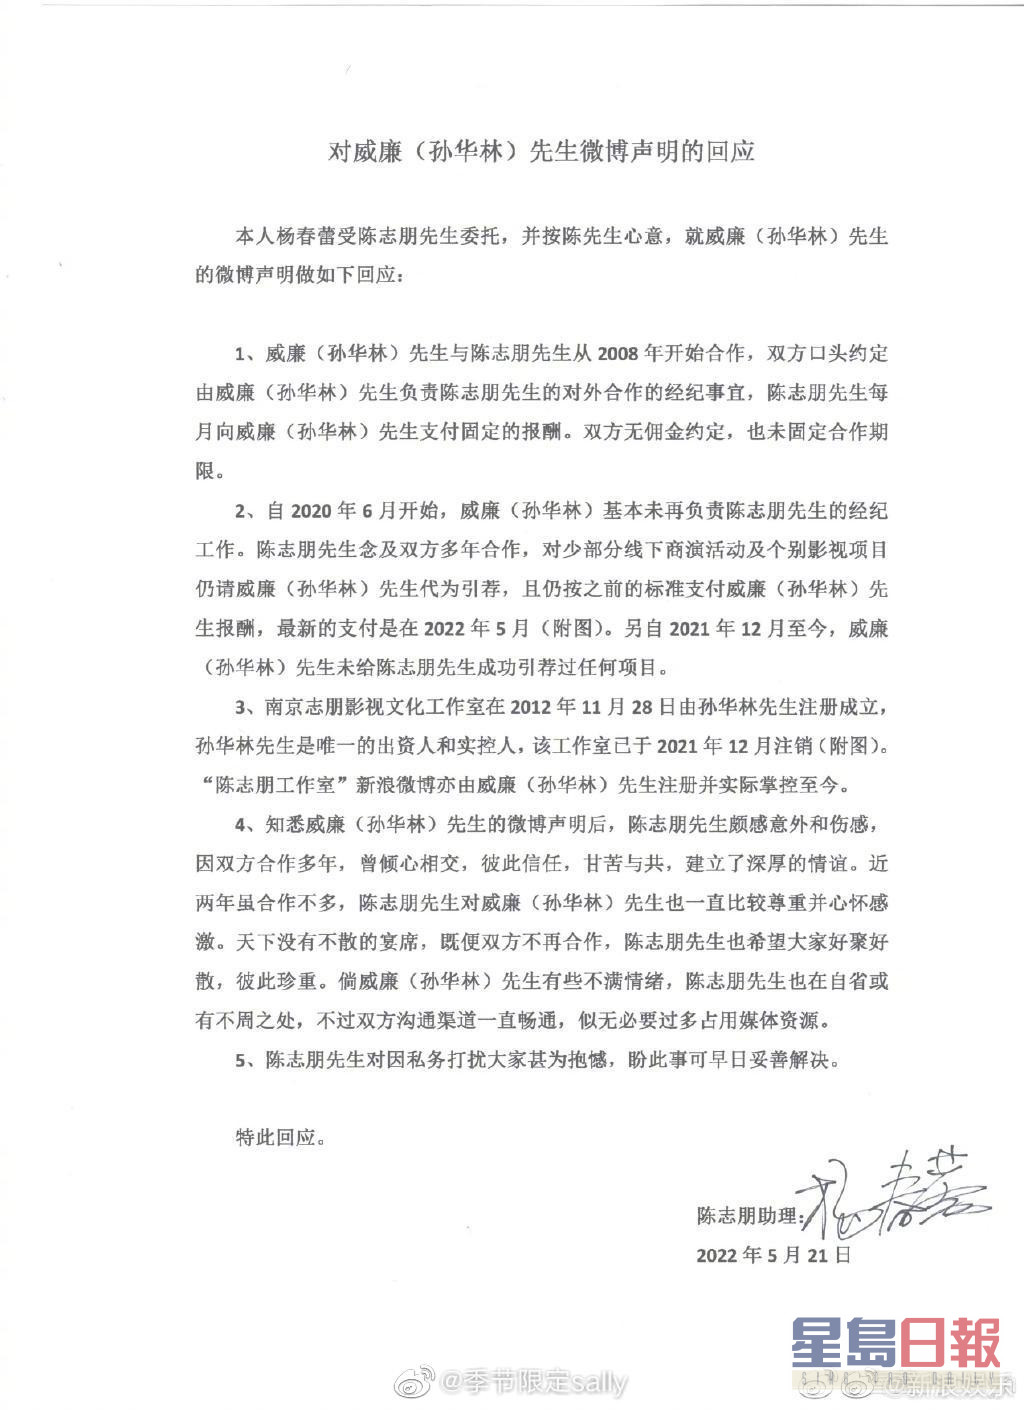 陈志朋今日透过助理发5点声明回应。